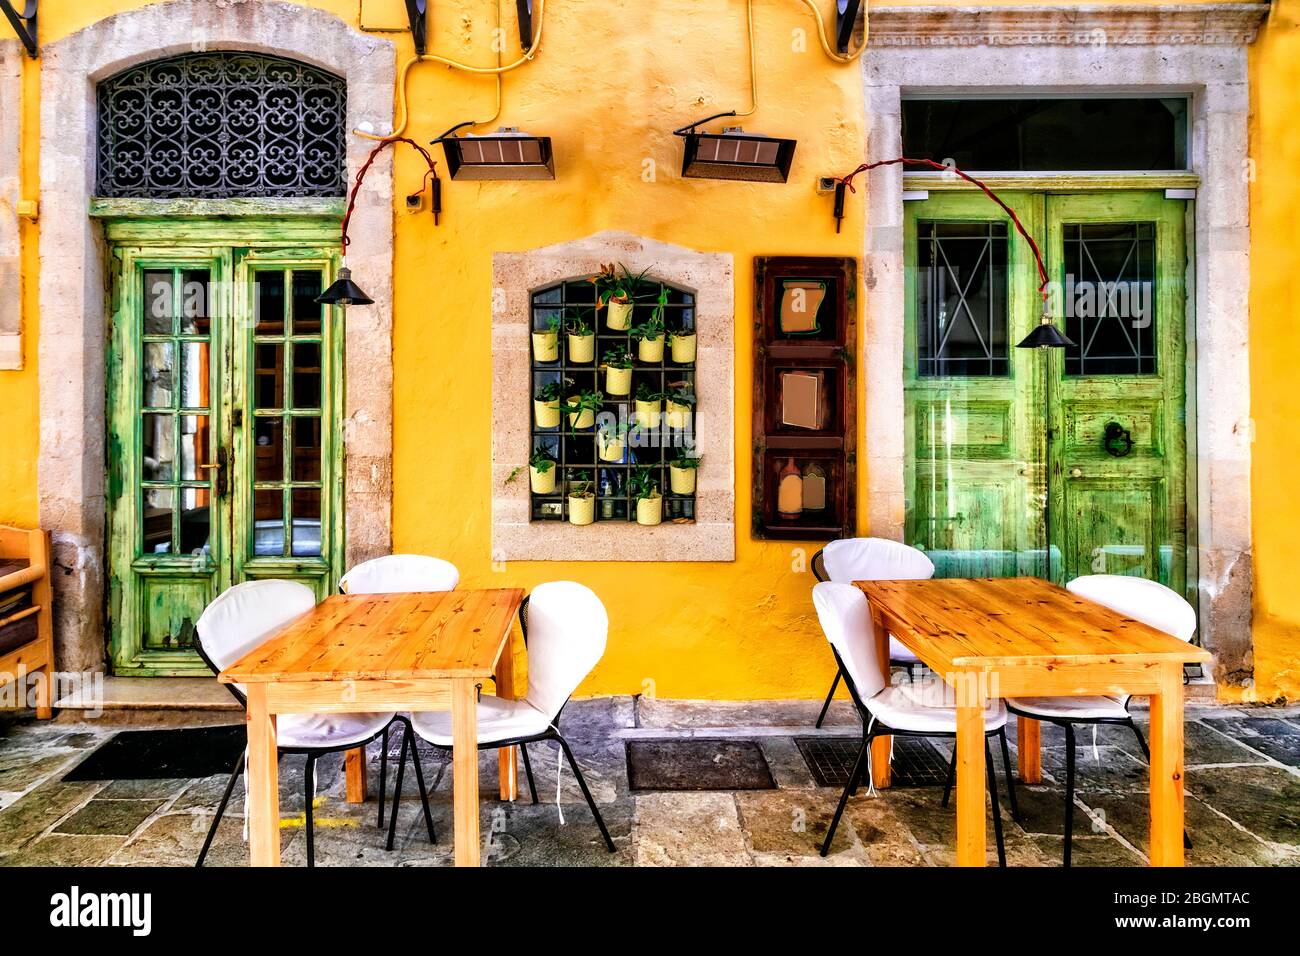 Colorata serie tradizionale greca - piccoli ristoranti (taverne) nella città vecchia di Rethymno, l'isola di Creta. Foto Stock